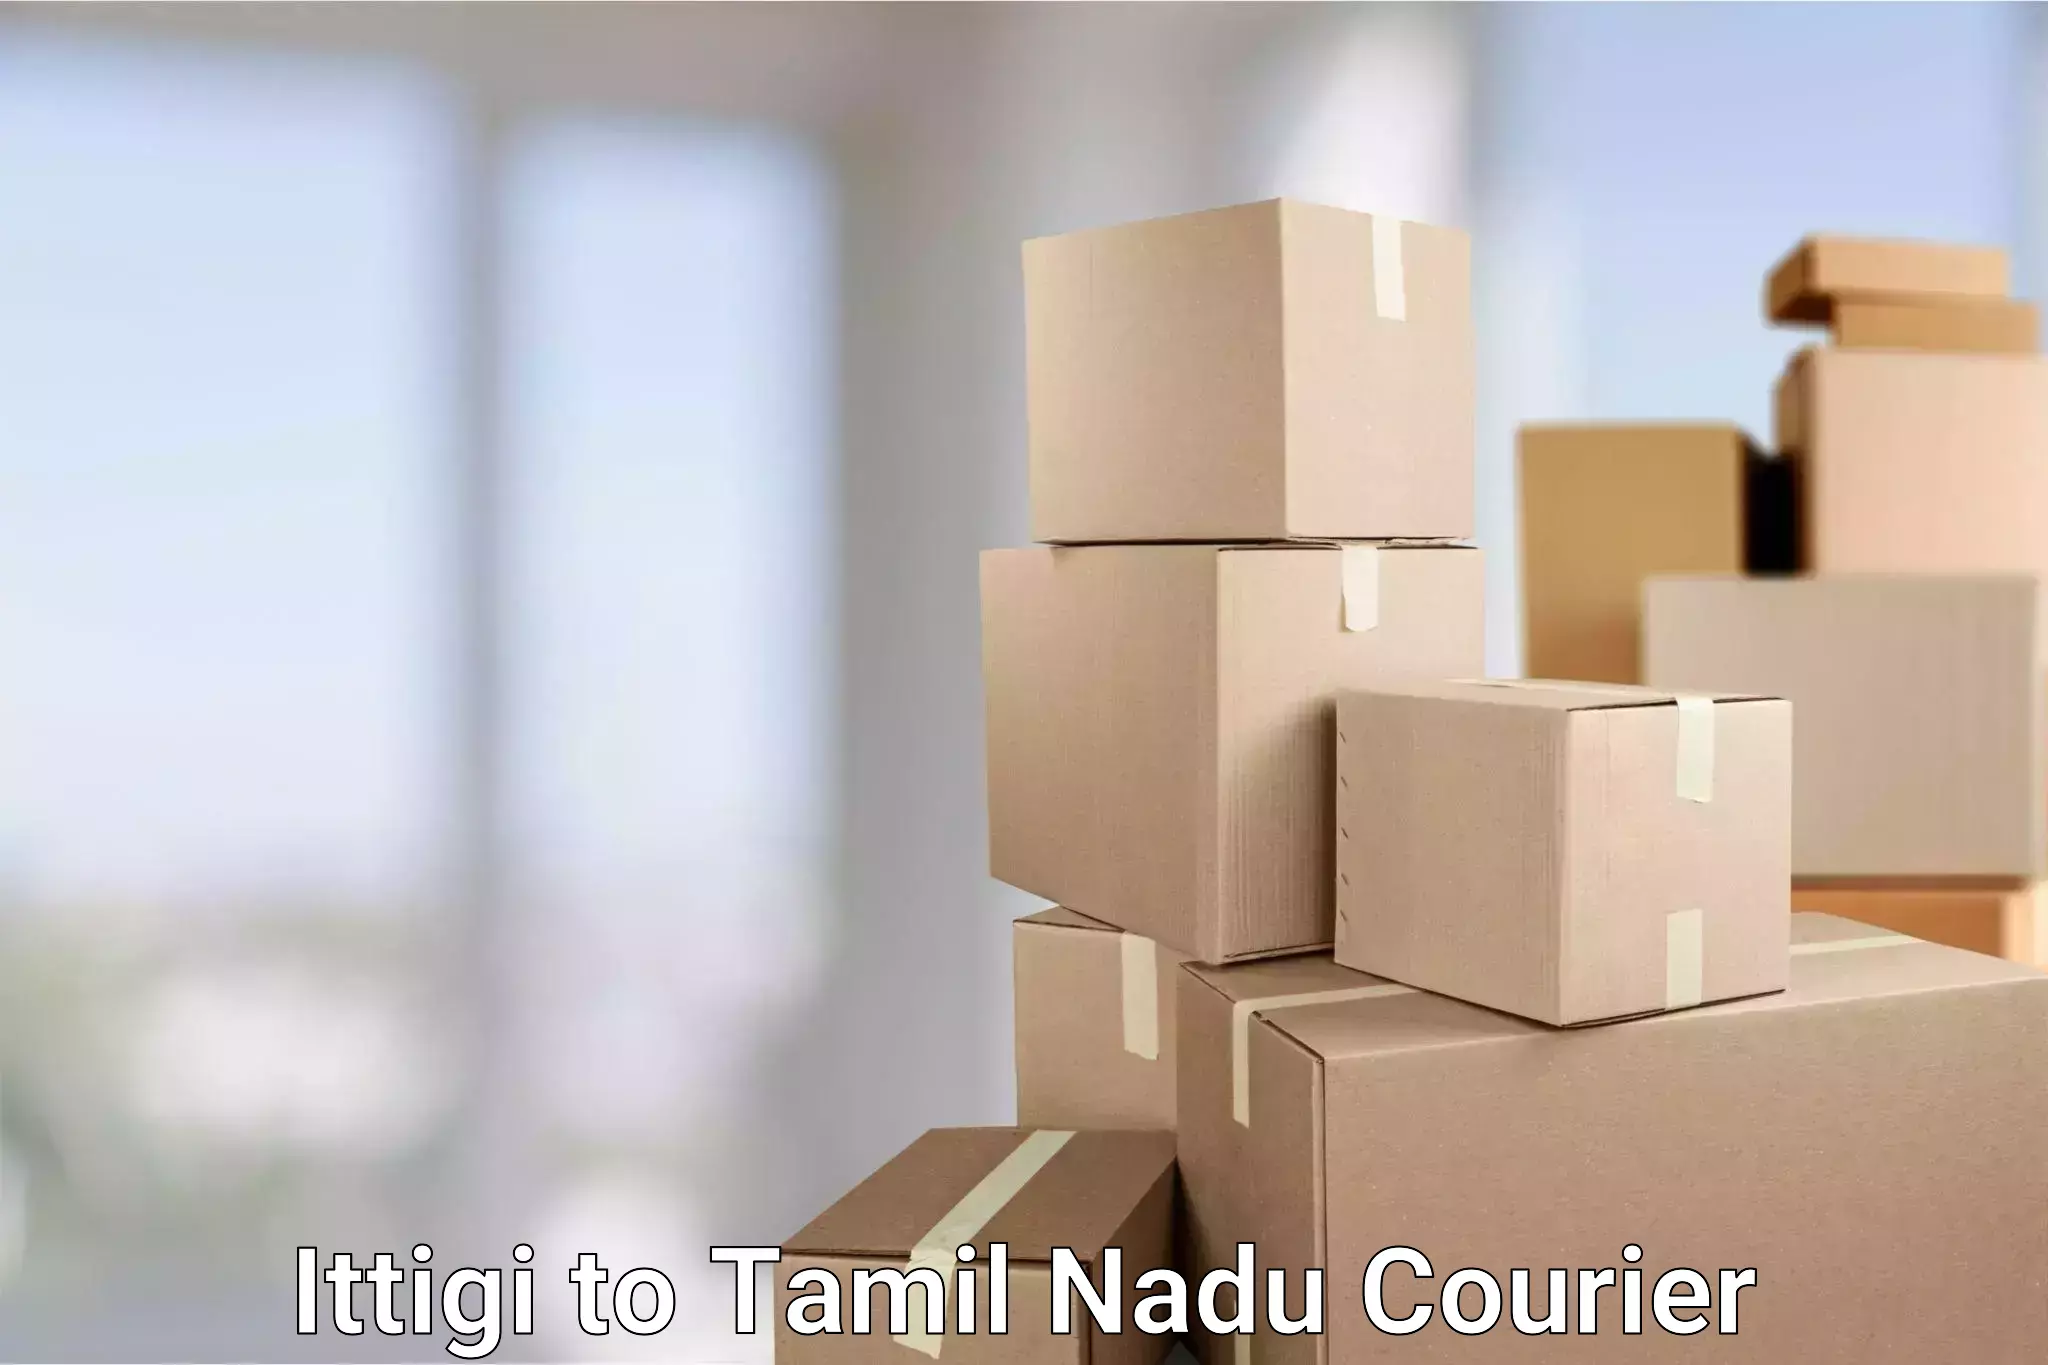 Automated parcel services Ittigi to Thiruvadanai